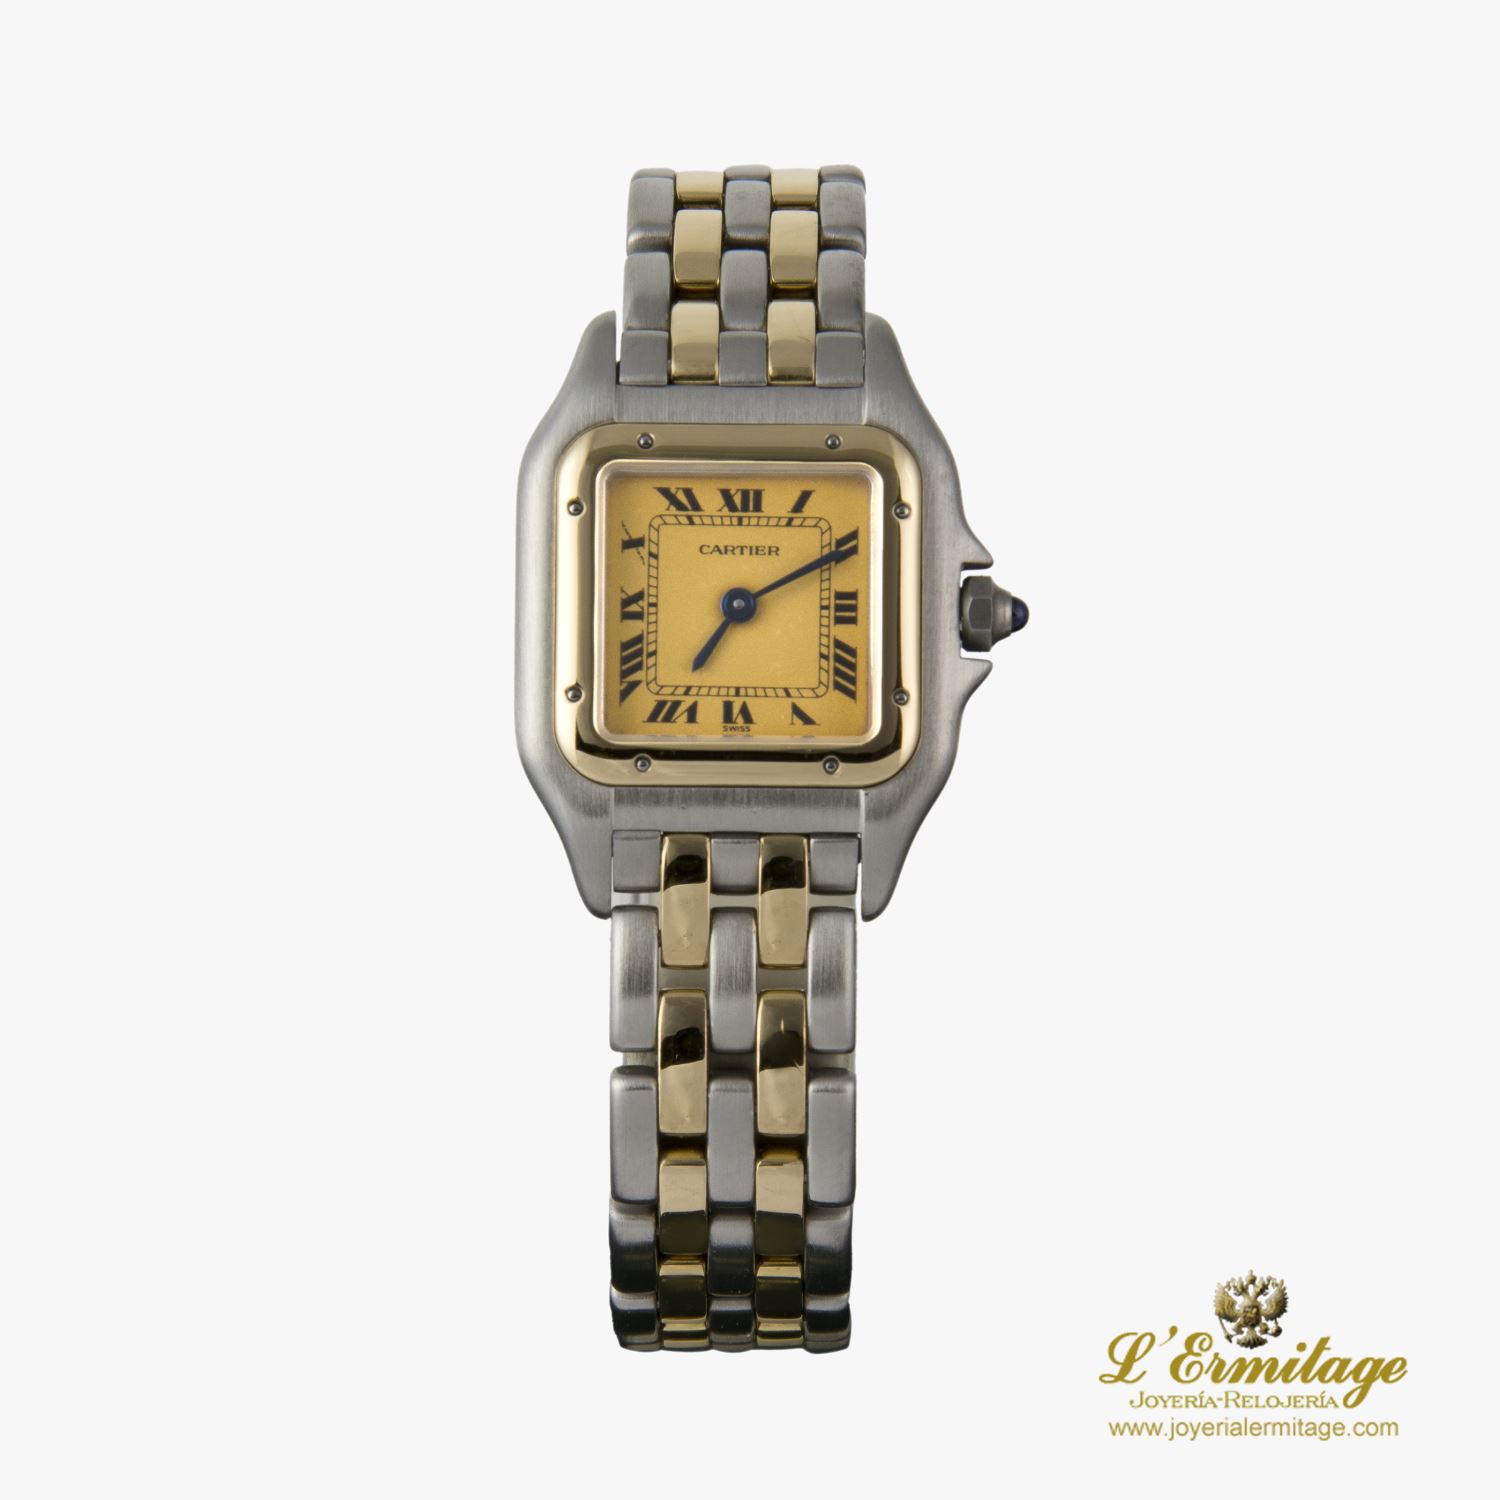 Reloj Cartier Panthere Acero Y Oro Cuarzo Señora. Cuarzo. Acero Y Oro. Reloj Dama · Compra Venta de Relojes de Lujo y Joyas · Joyería L'Ermitage